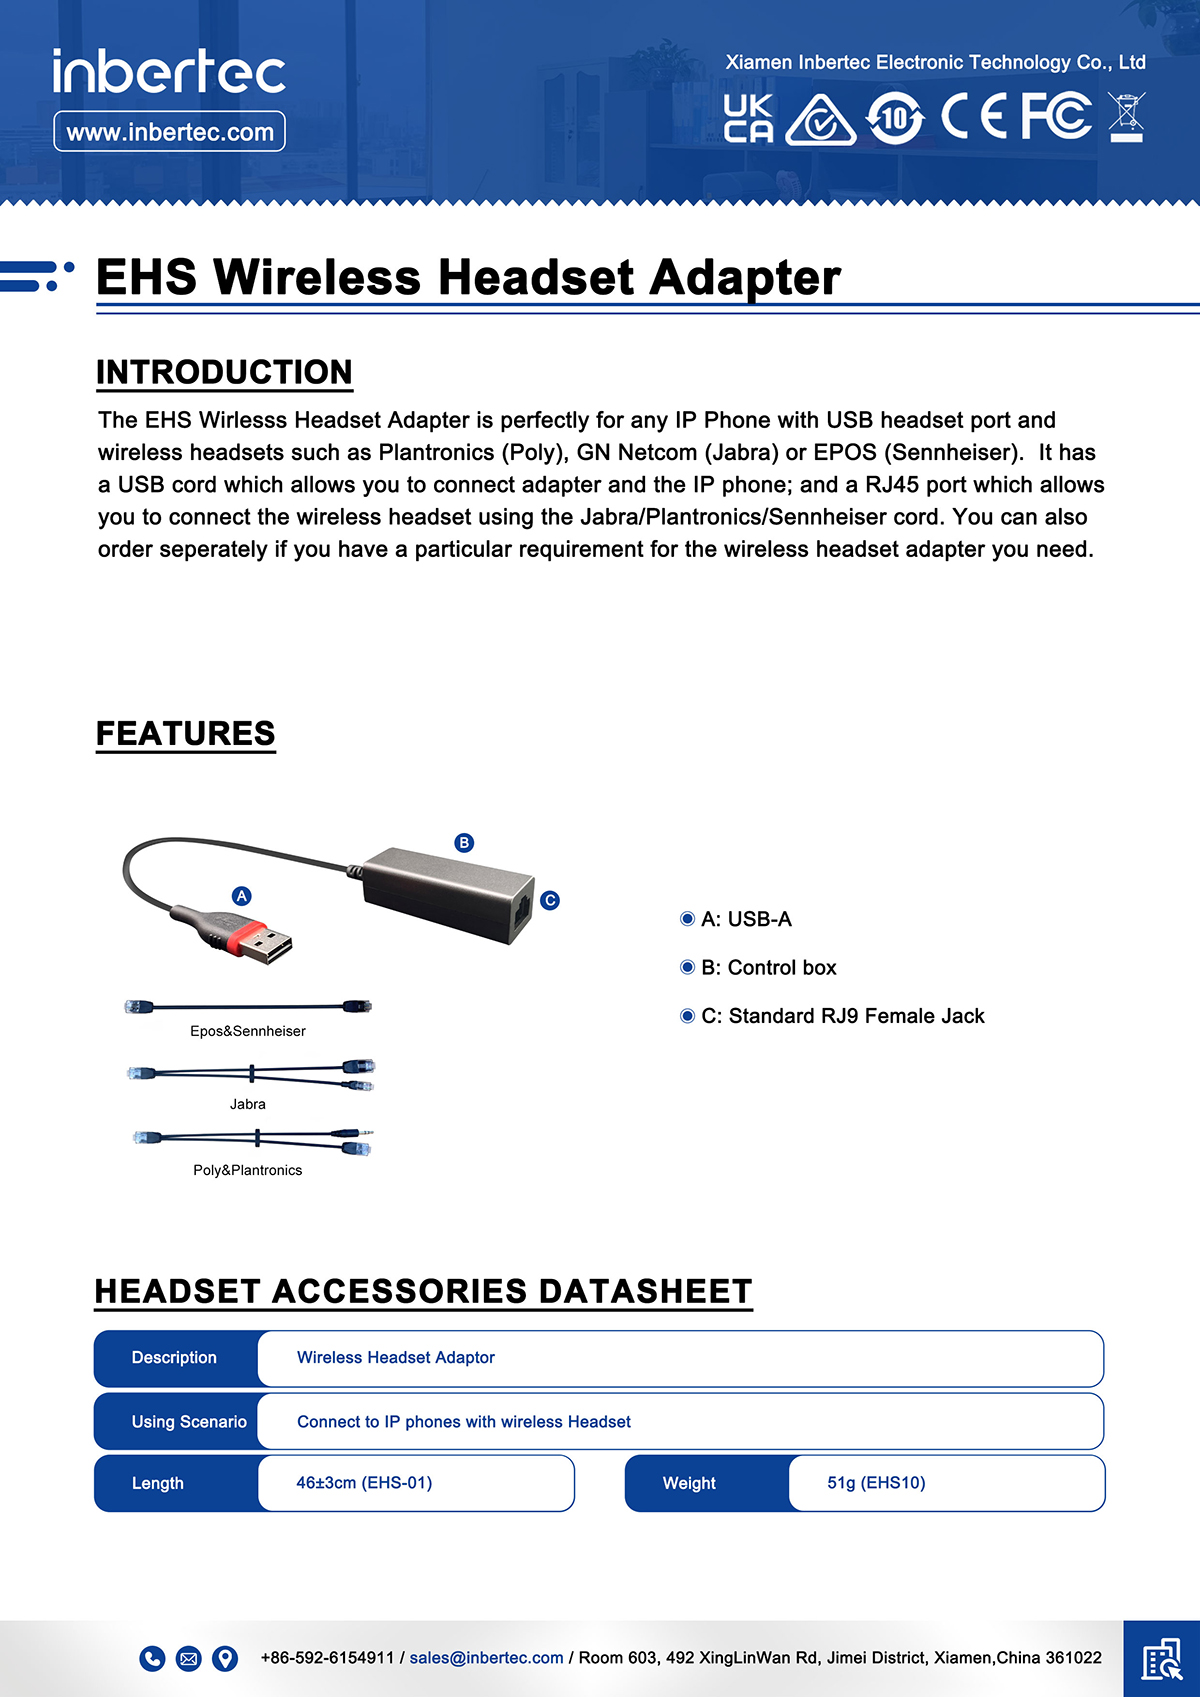 1 EHS-Uila-Headset-Adapter